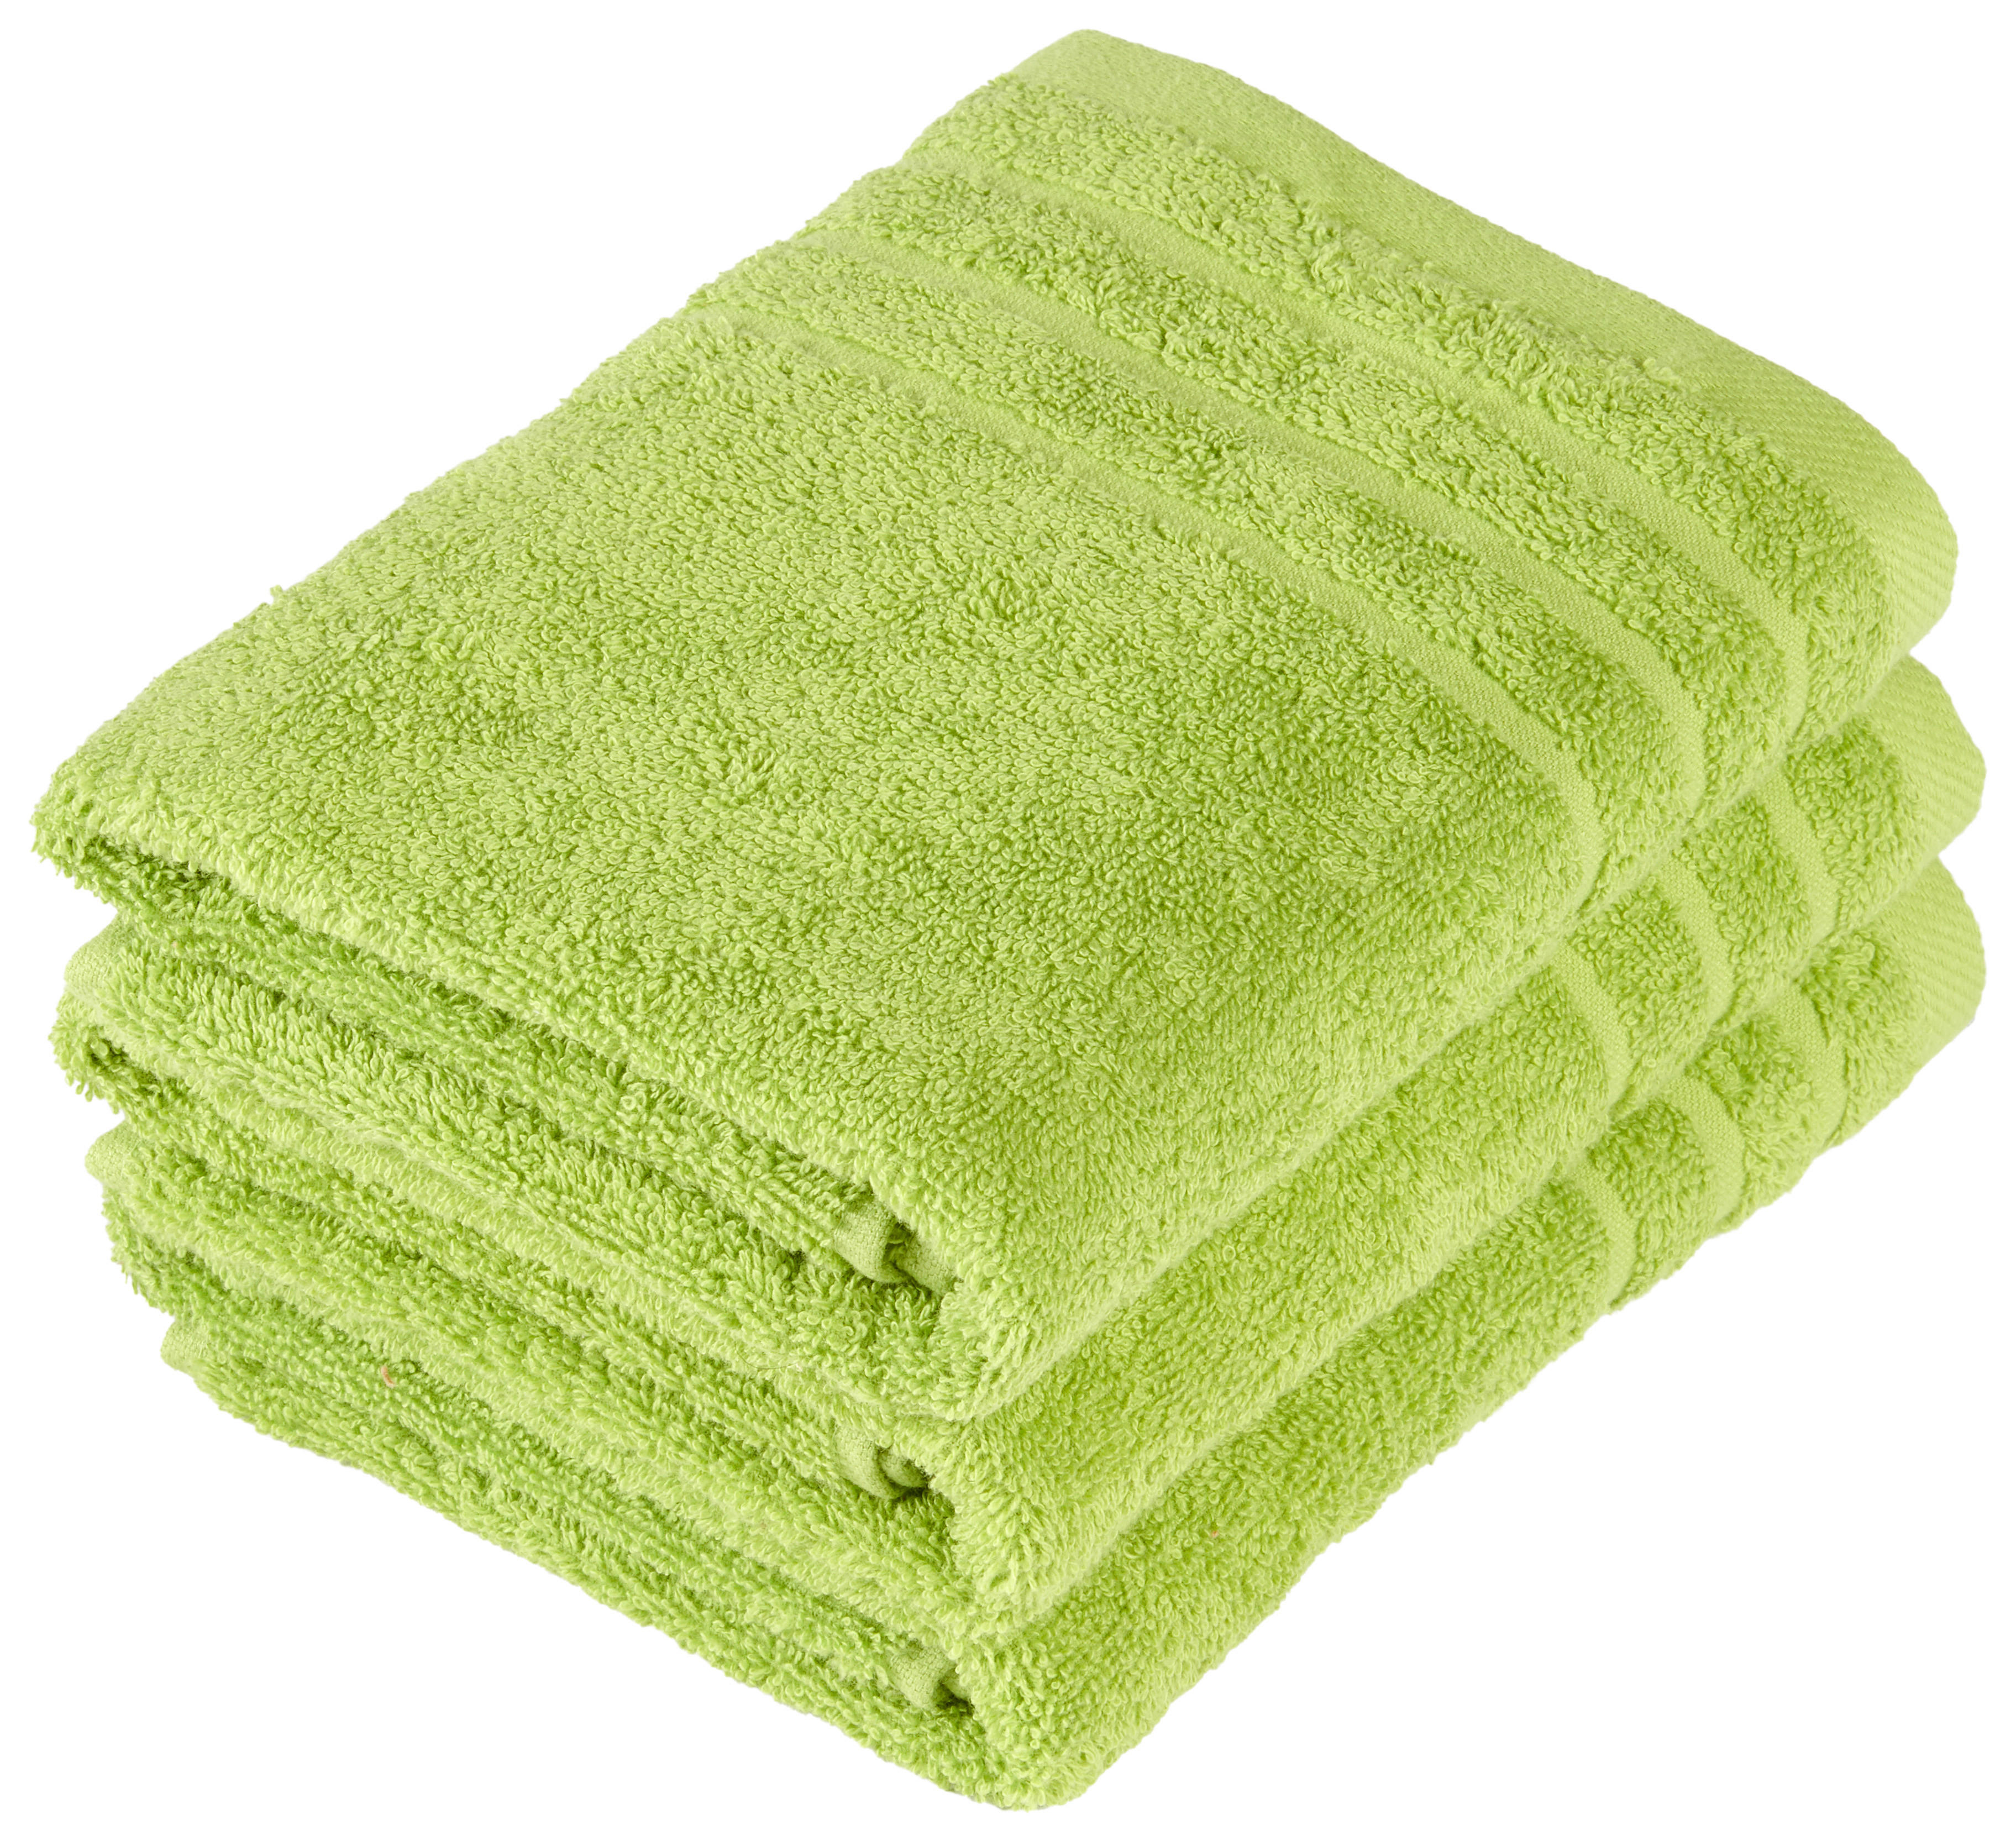 FROTTÉSET 50/90 cm grön  - grön, Basics, textil (50/90cm) - Esposa